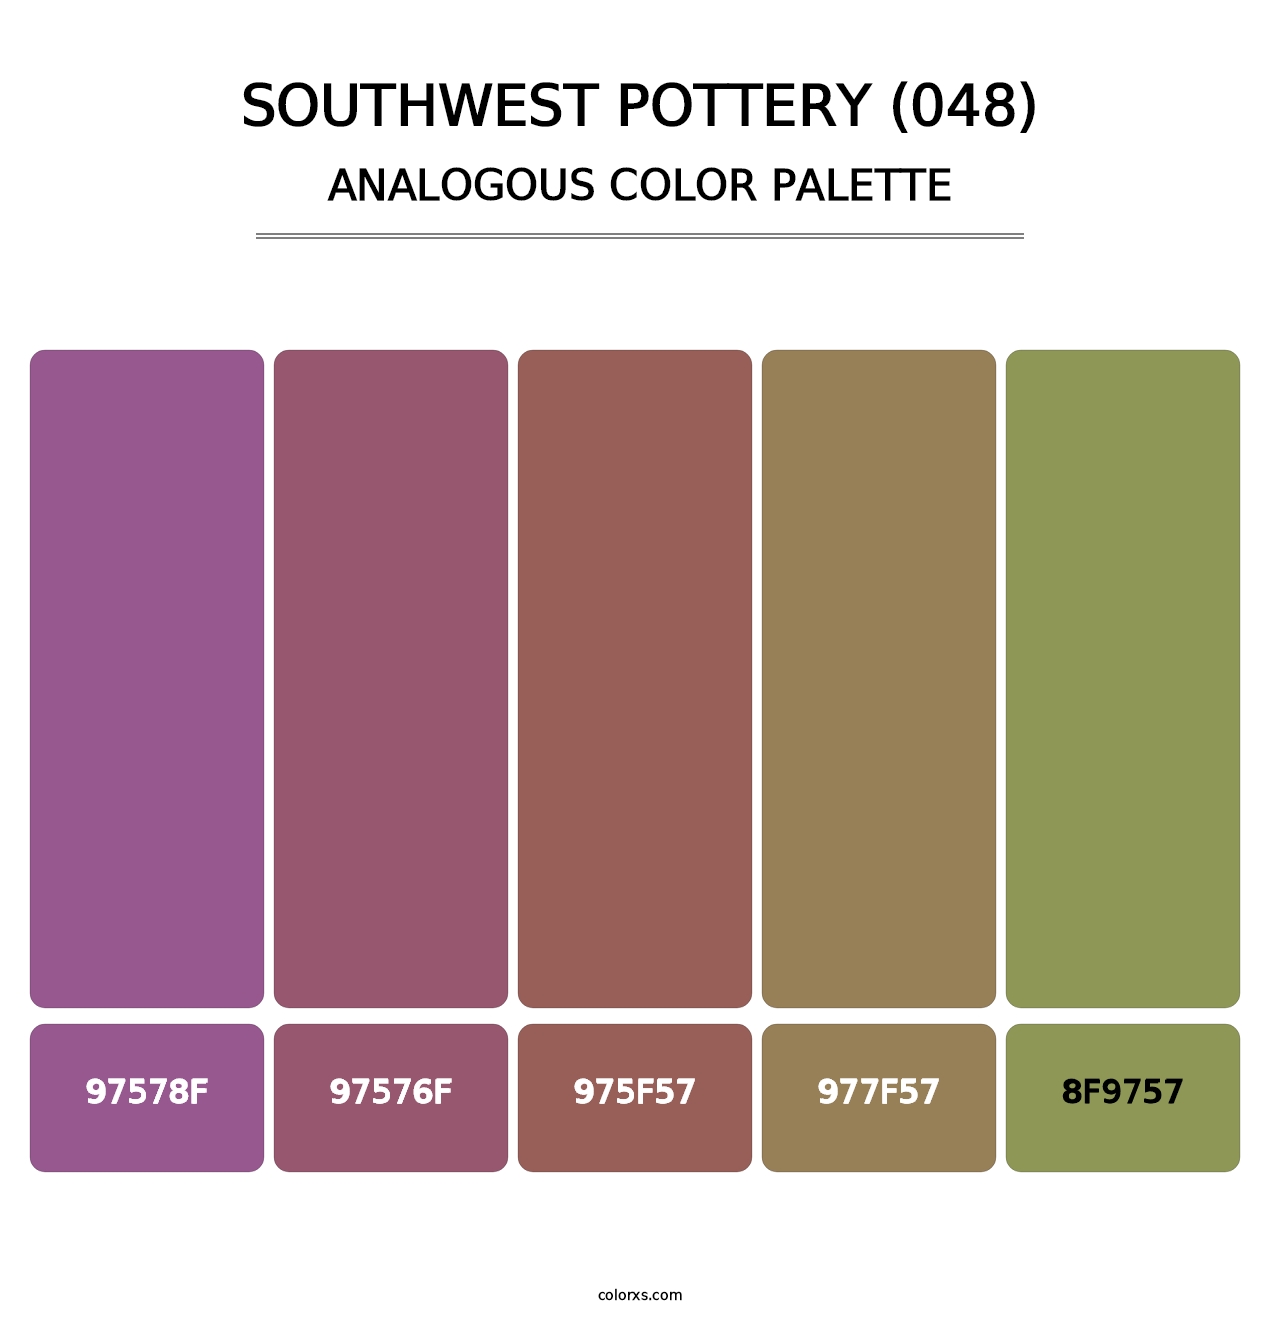 Southwest Pottery (048) - Analogous Color Palette